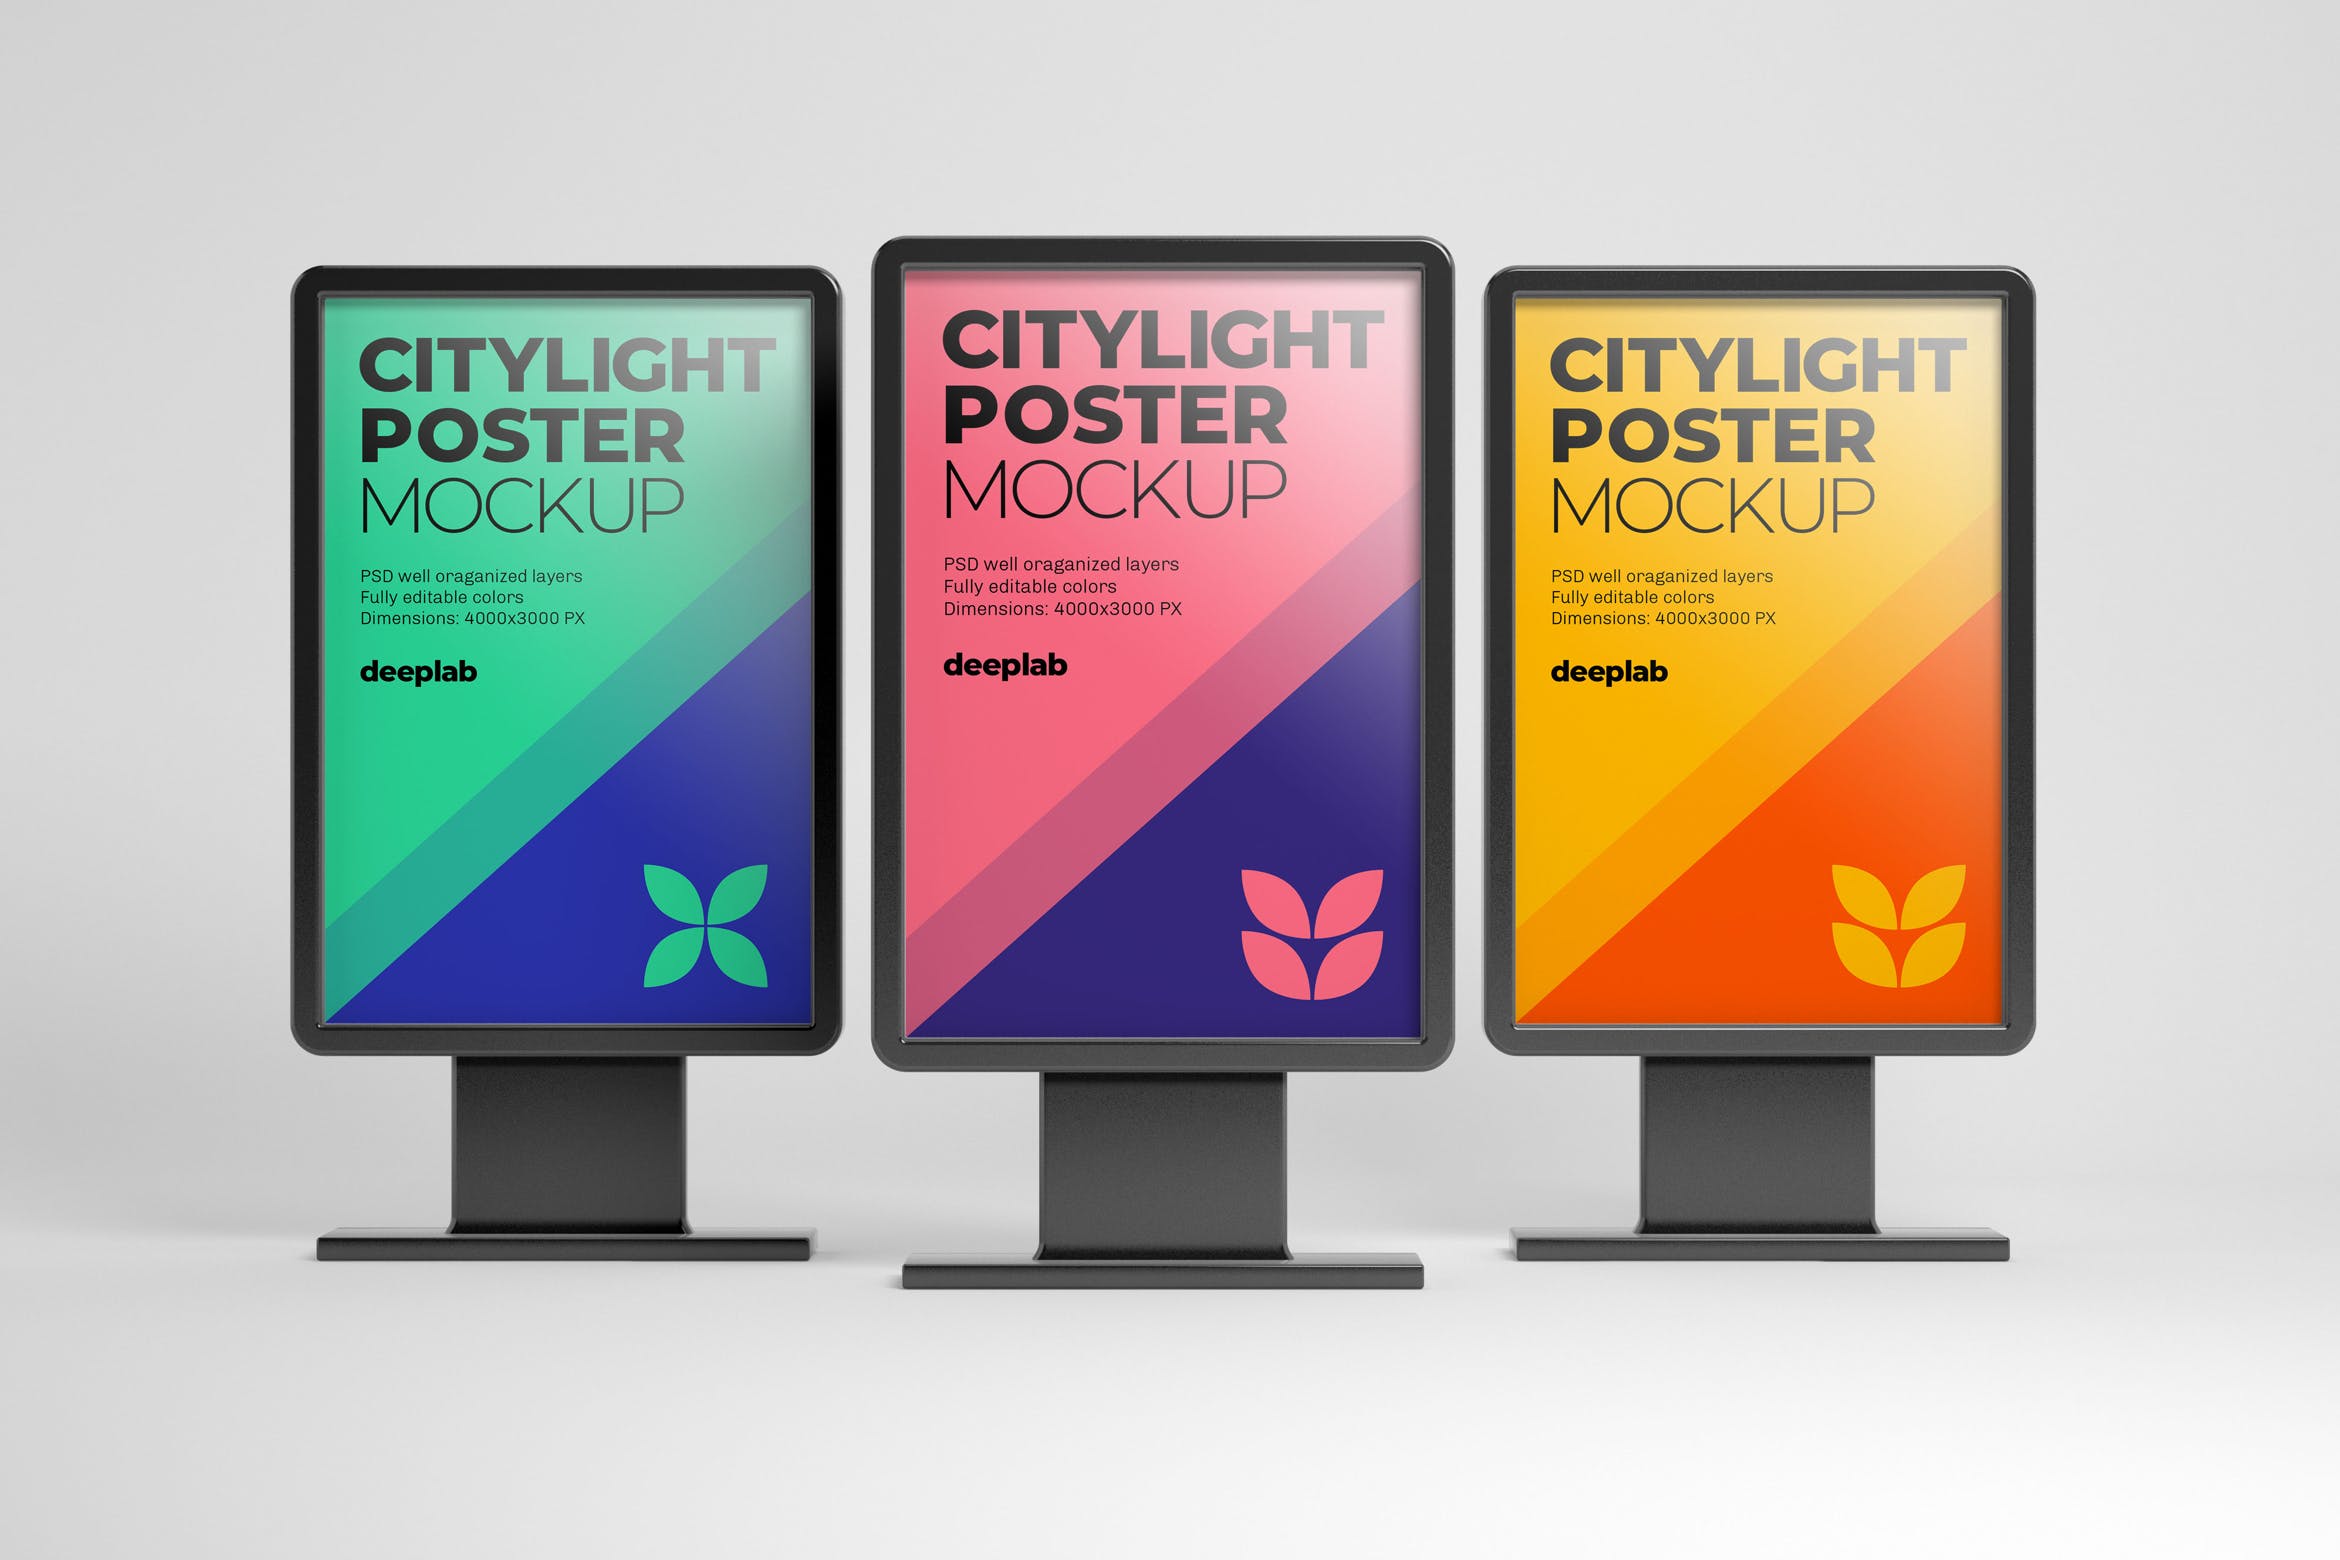 城市灯箱设计广告样机模板 Citylight Digital Poster Mockup设计素材模板